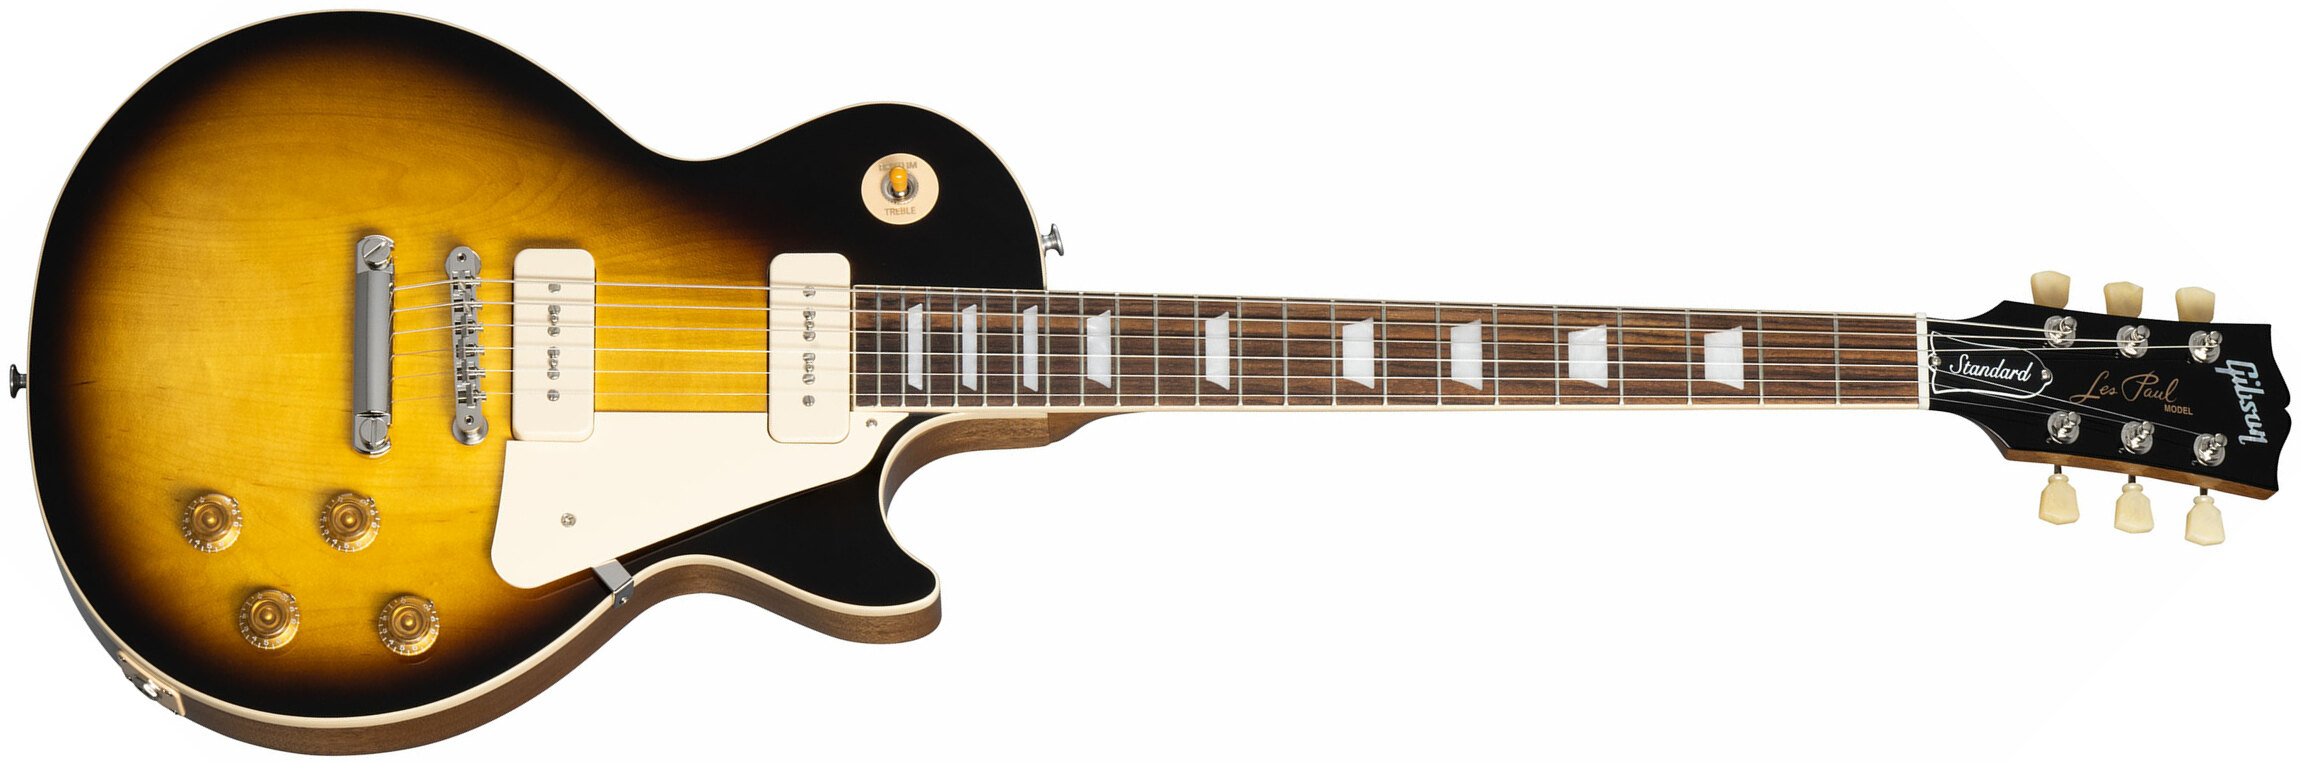 Gibson Les Paul Standard 50s P90 Original 2p90 Ht Rw - Tobacco Burst - Guitarra eléctrica de corte único. - Main picture